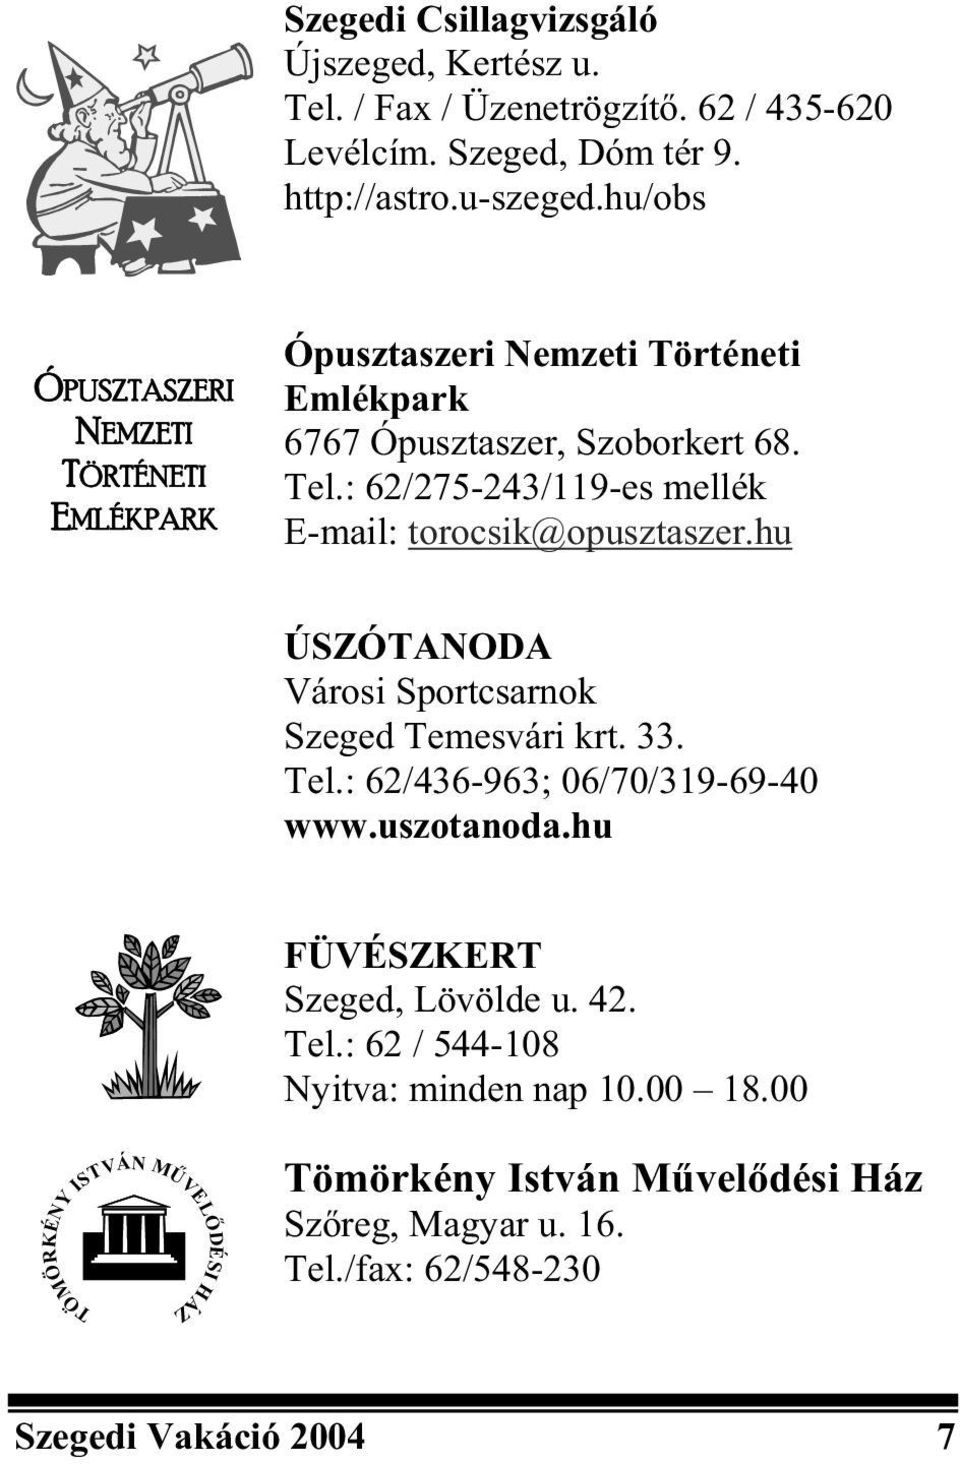 : 62/275-243/119-es mellék E-mail: torocsik@opusztaszer.hu ÚSZÓTANODA Városi Sportcsarnok Szeged Temesvári krt. 33. Tel.: 62/436-963; 06/70/319-69-40 www.